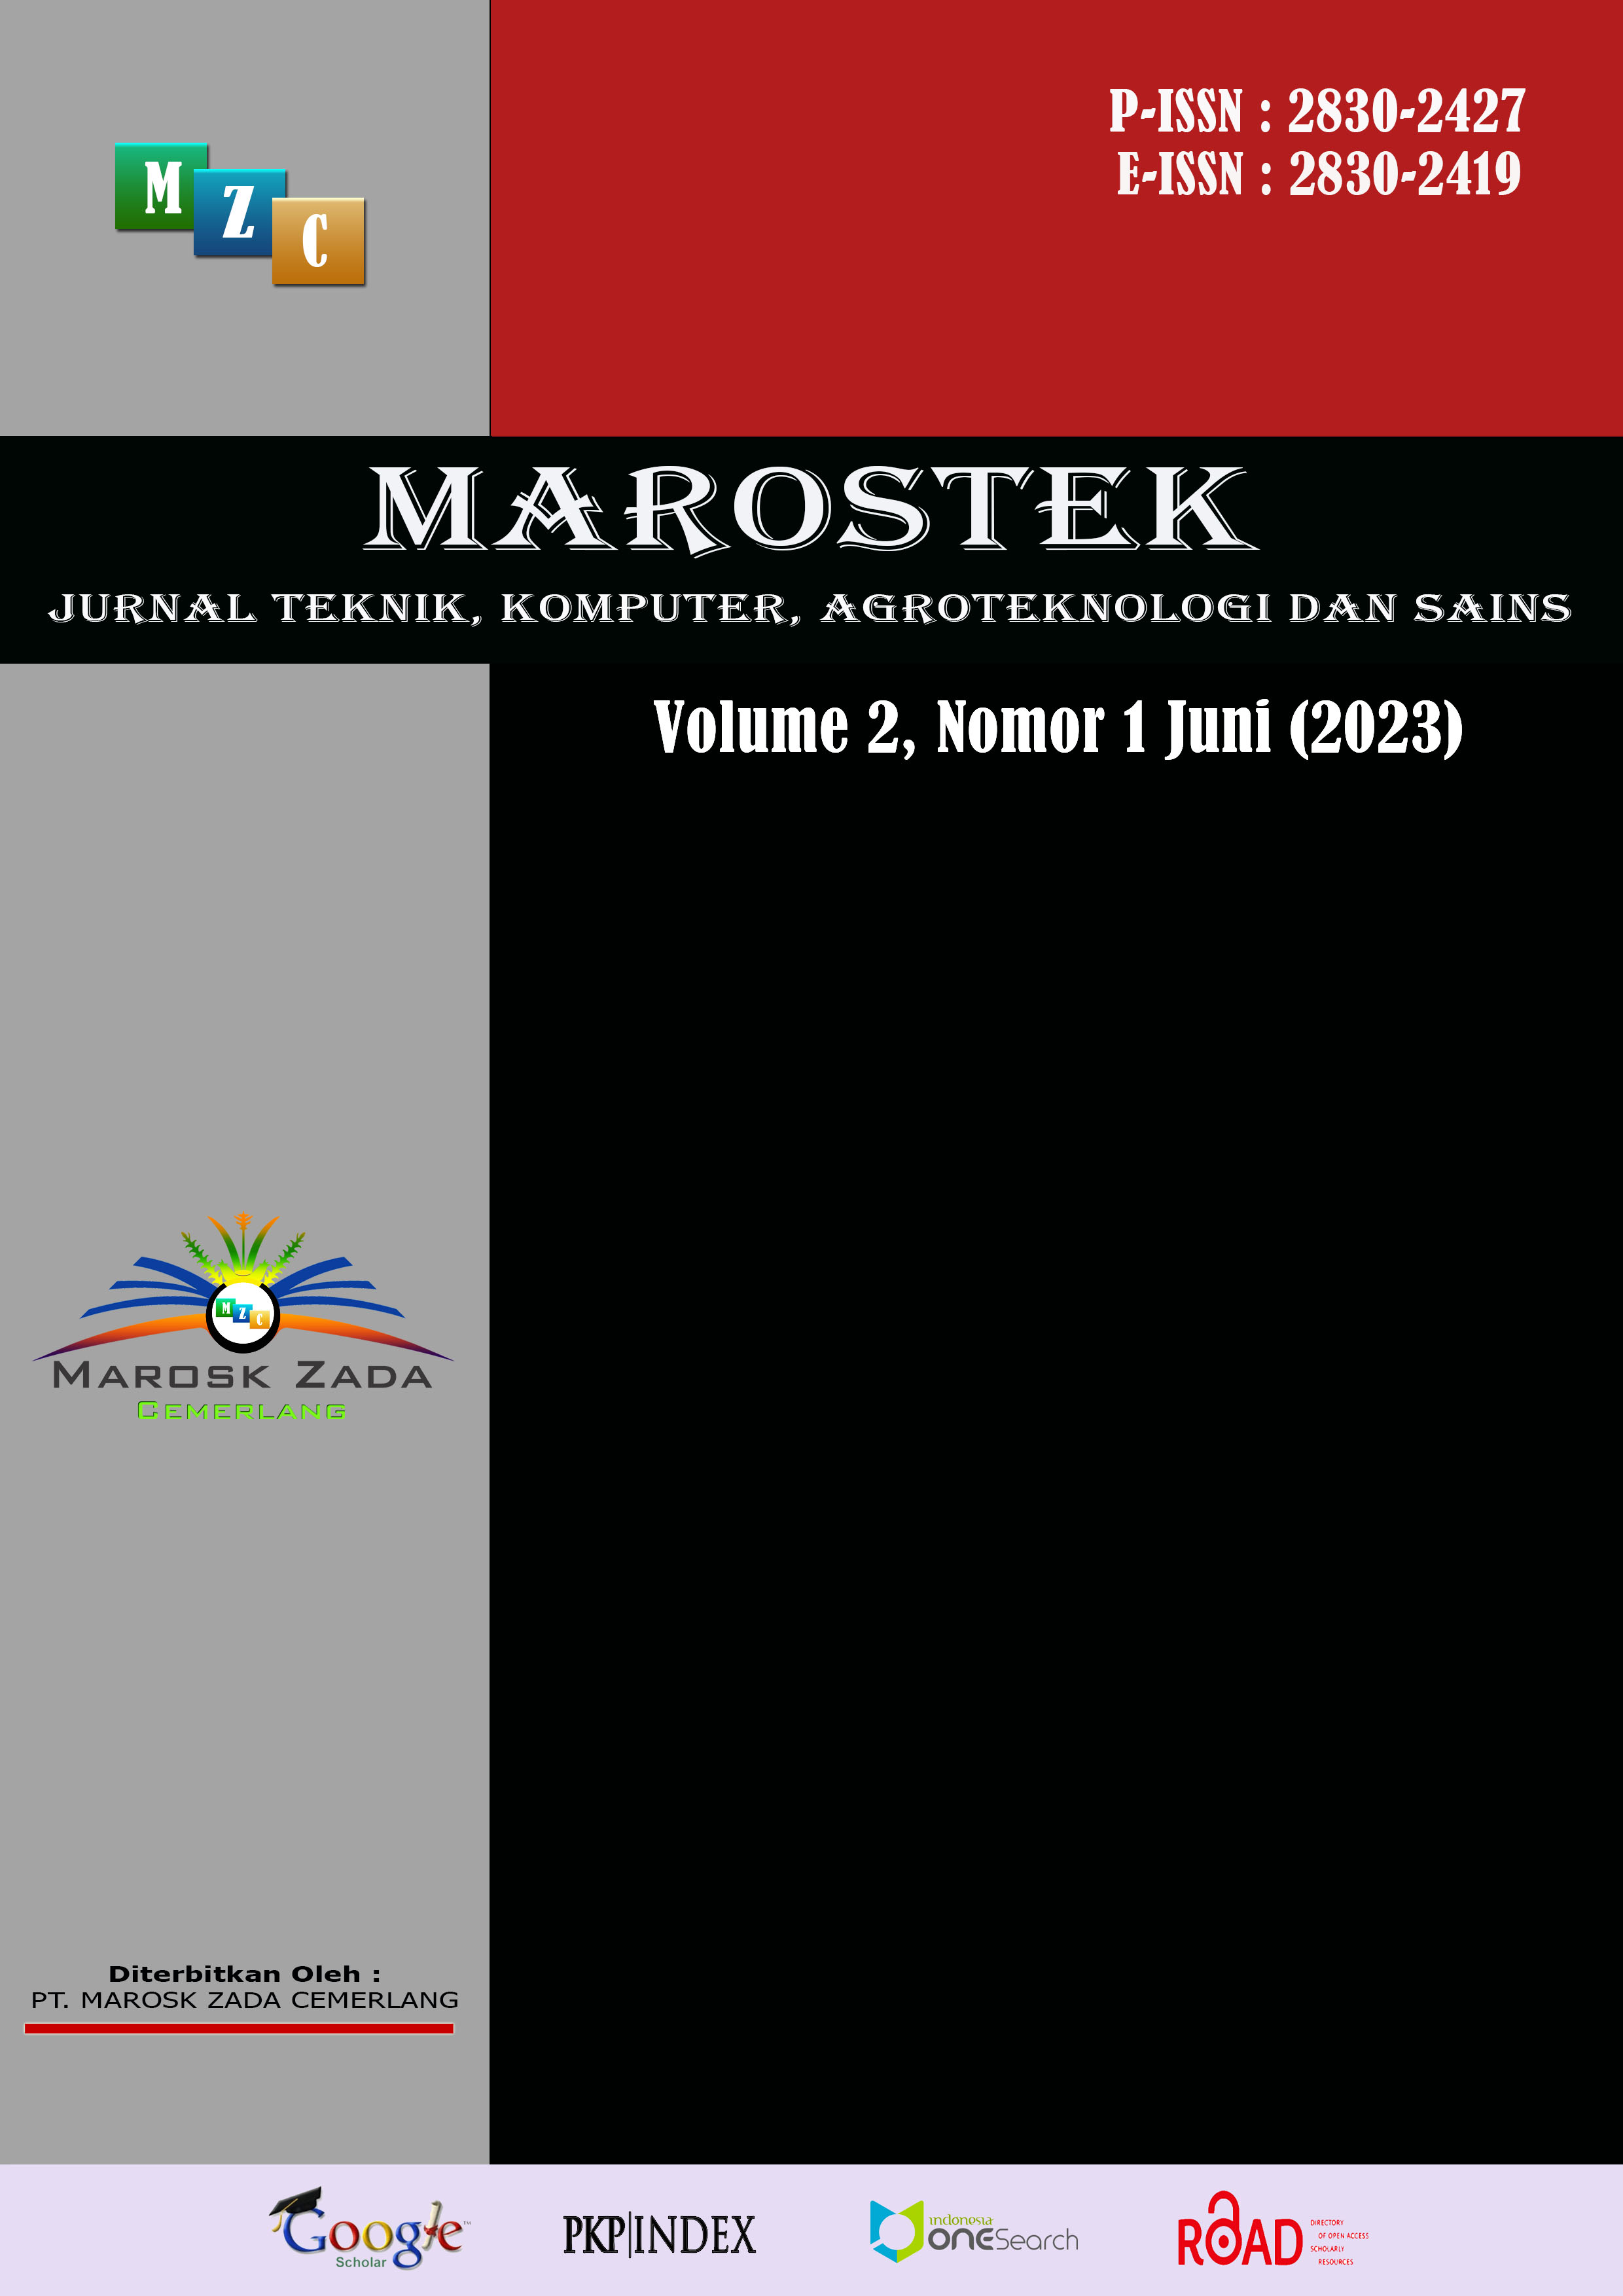 					View Vol. 2 No. 1 (2023): Jurnal Teknik, Komputer, Agroteknologi dan Sains (Marostek) IN PRESS
				